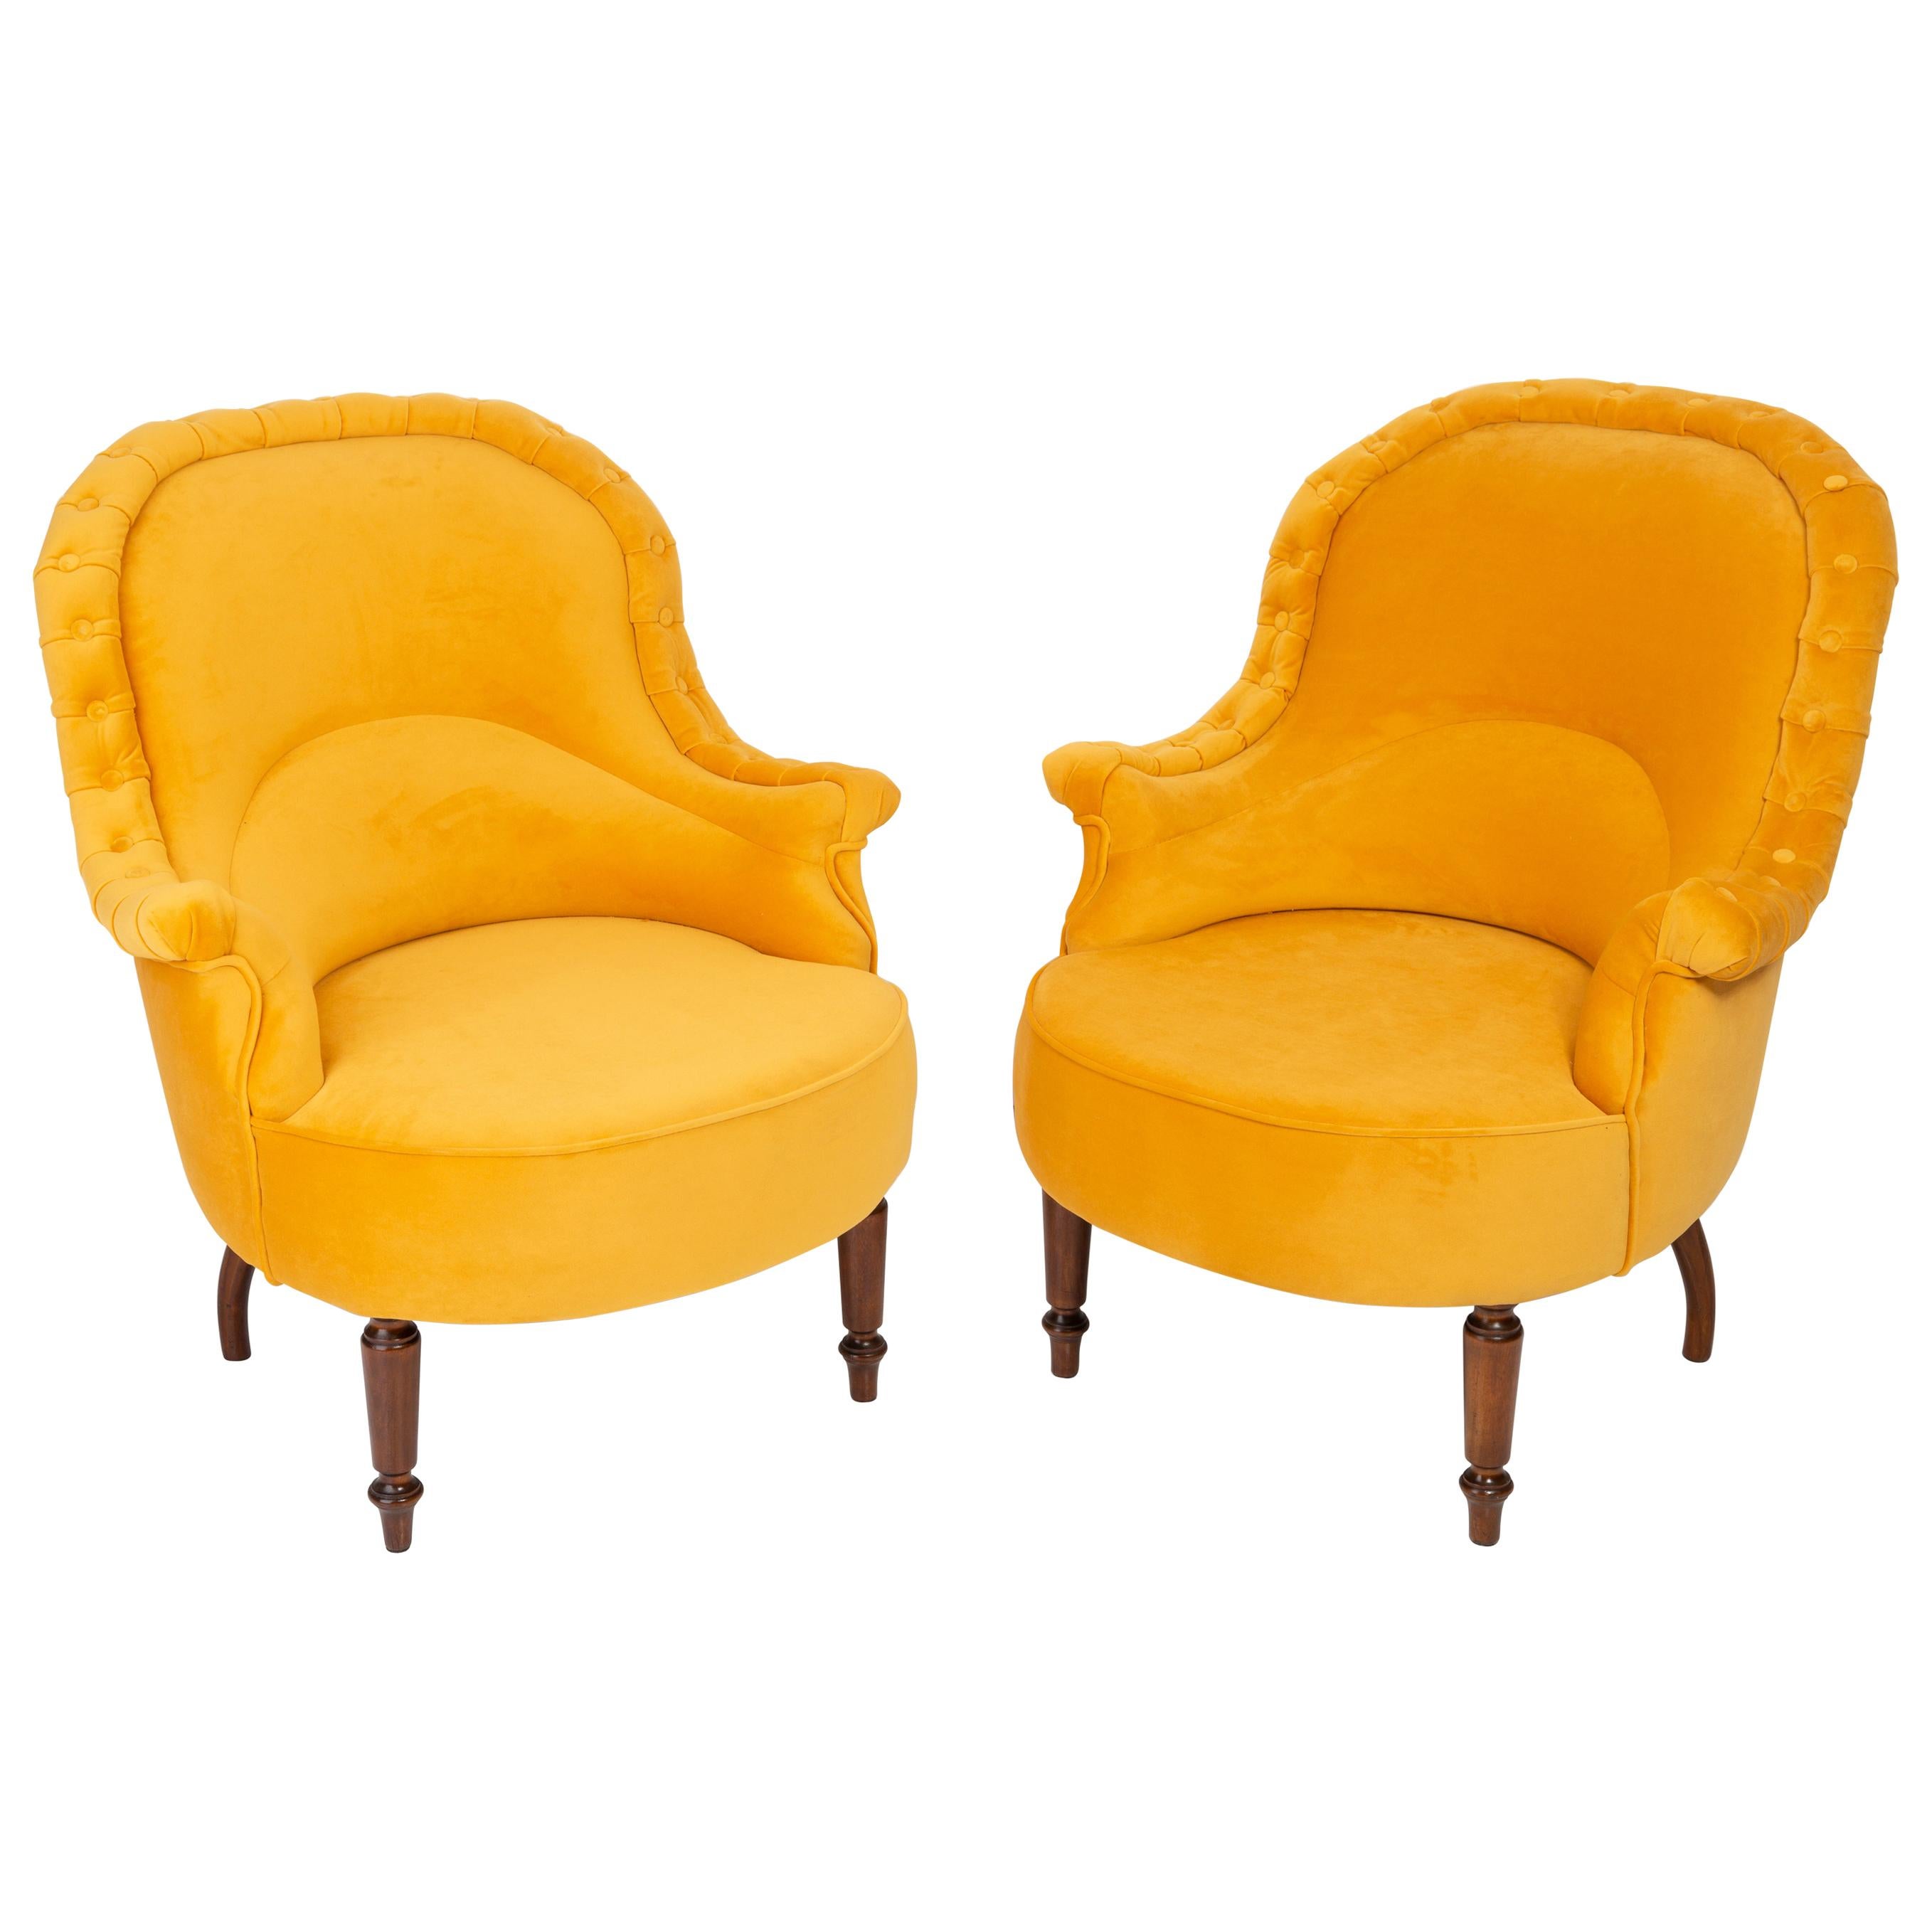 Paire de fauteuils uniques en jaune moutarde, années 1930, Allemagne